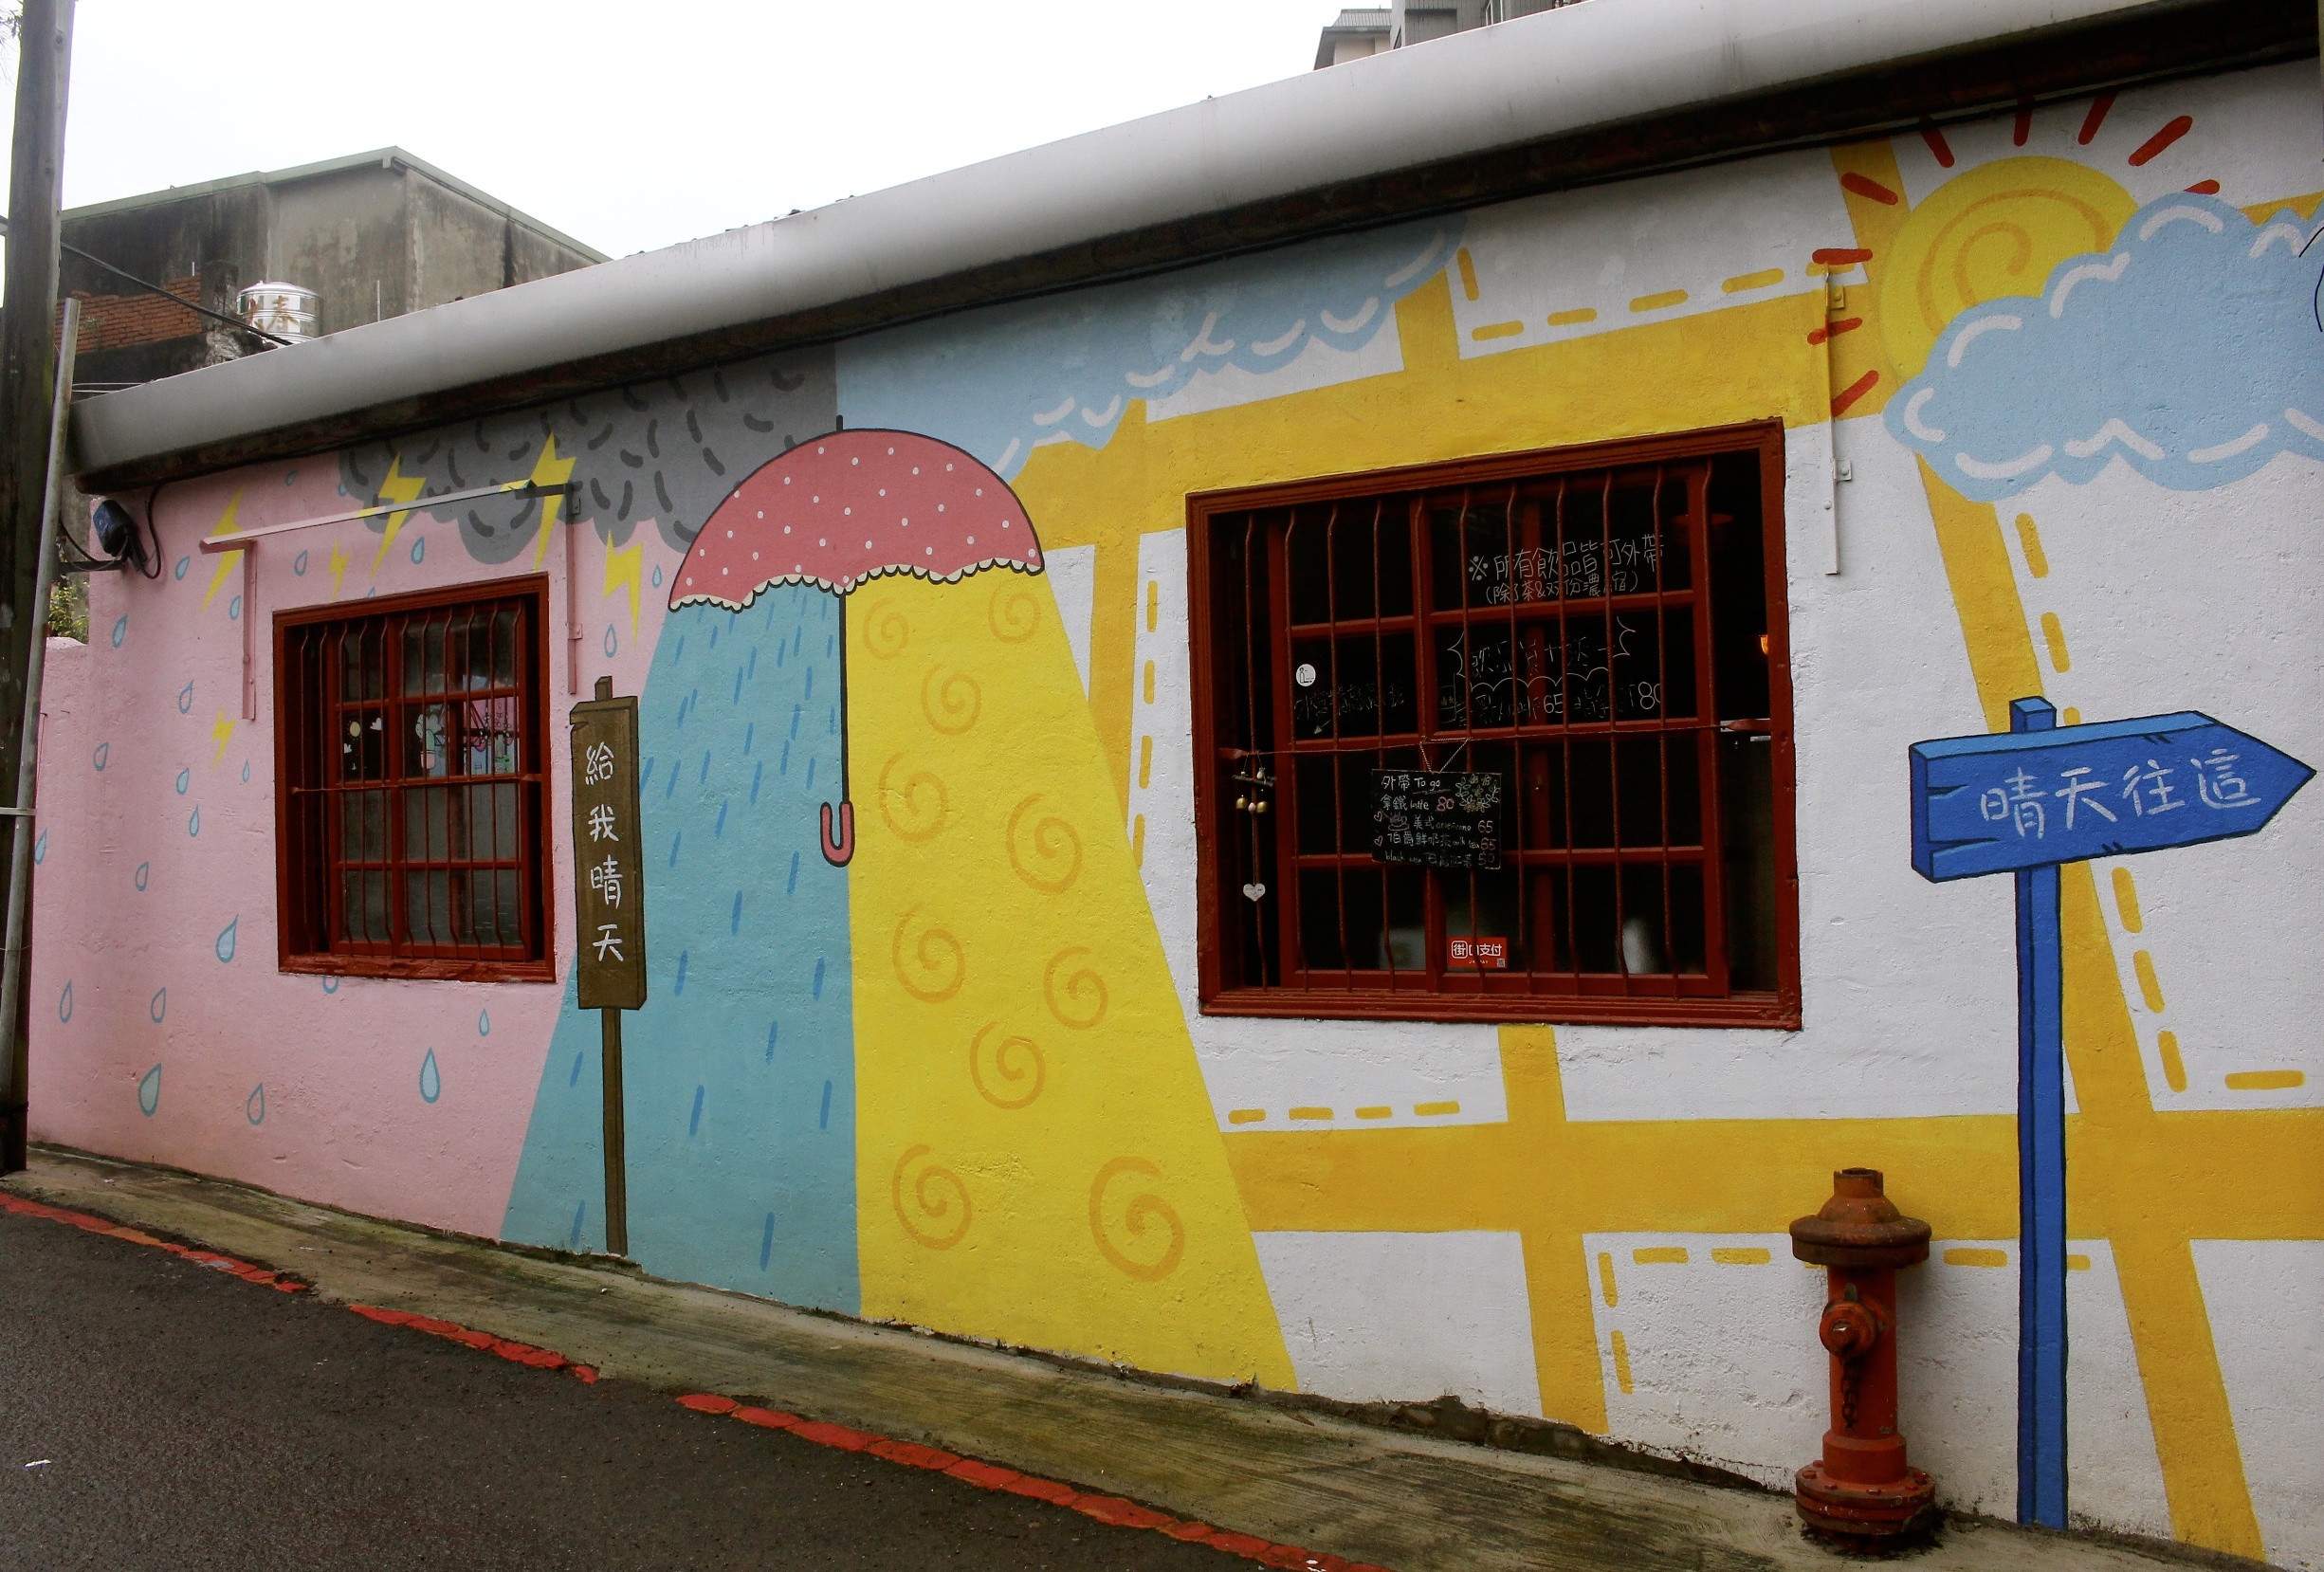 【桃園 晴天咖啡sunny cafe】彎曲巷弄裡的紅磚老宅。超萌彩繪牆「有你在便是晴天」